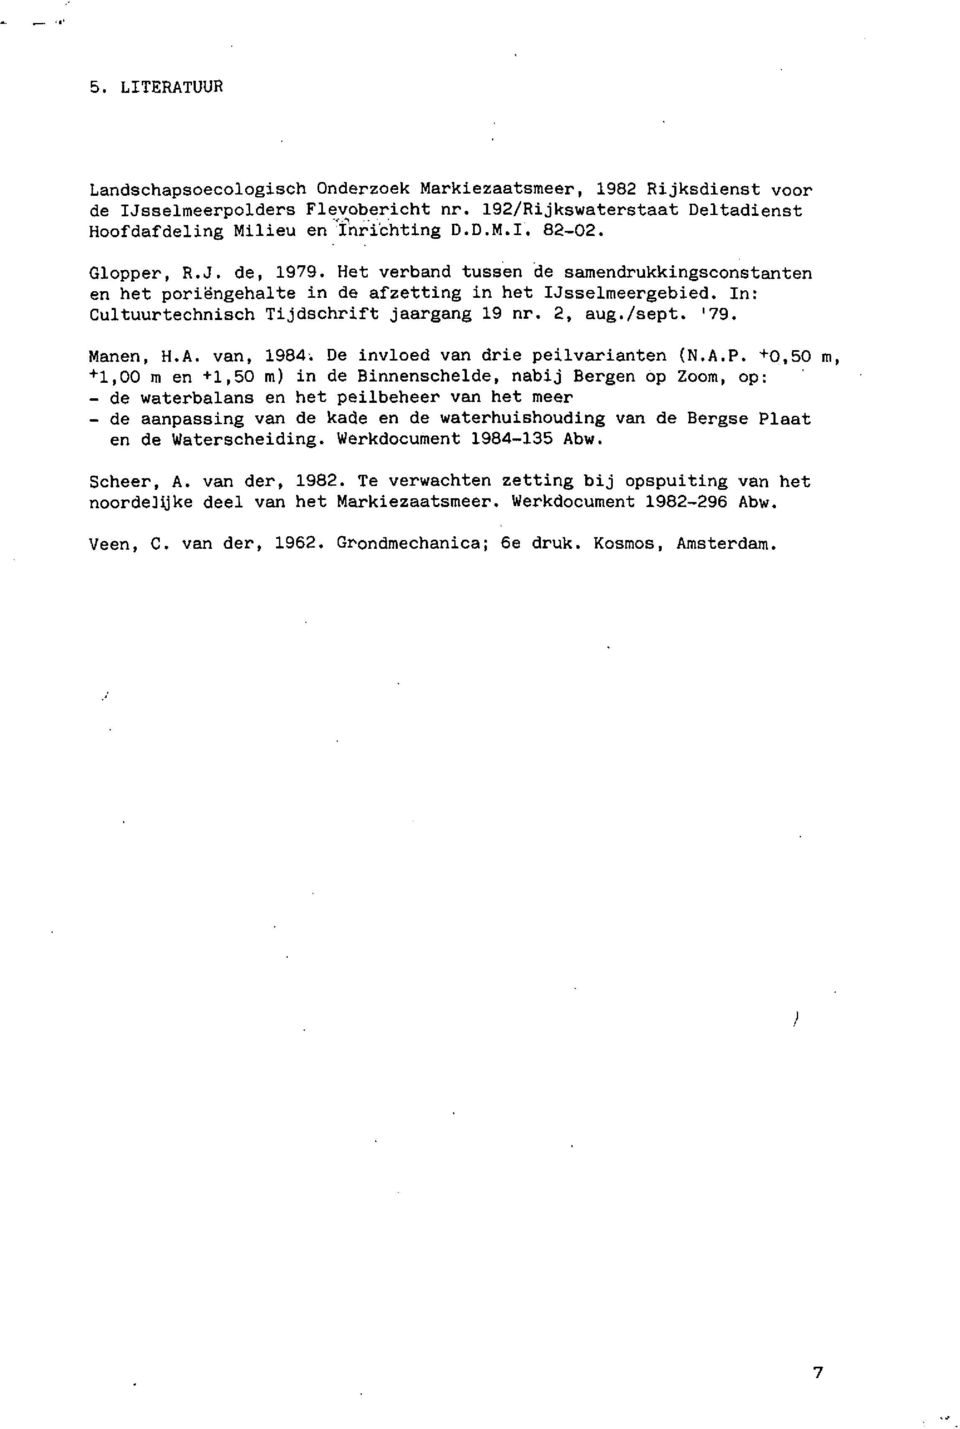 Manen, H.A. van, 1984. De invloed van drie peilvarianten (N.A.P. +0.